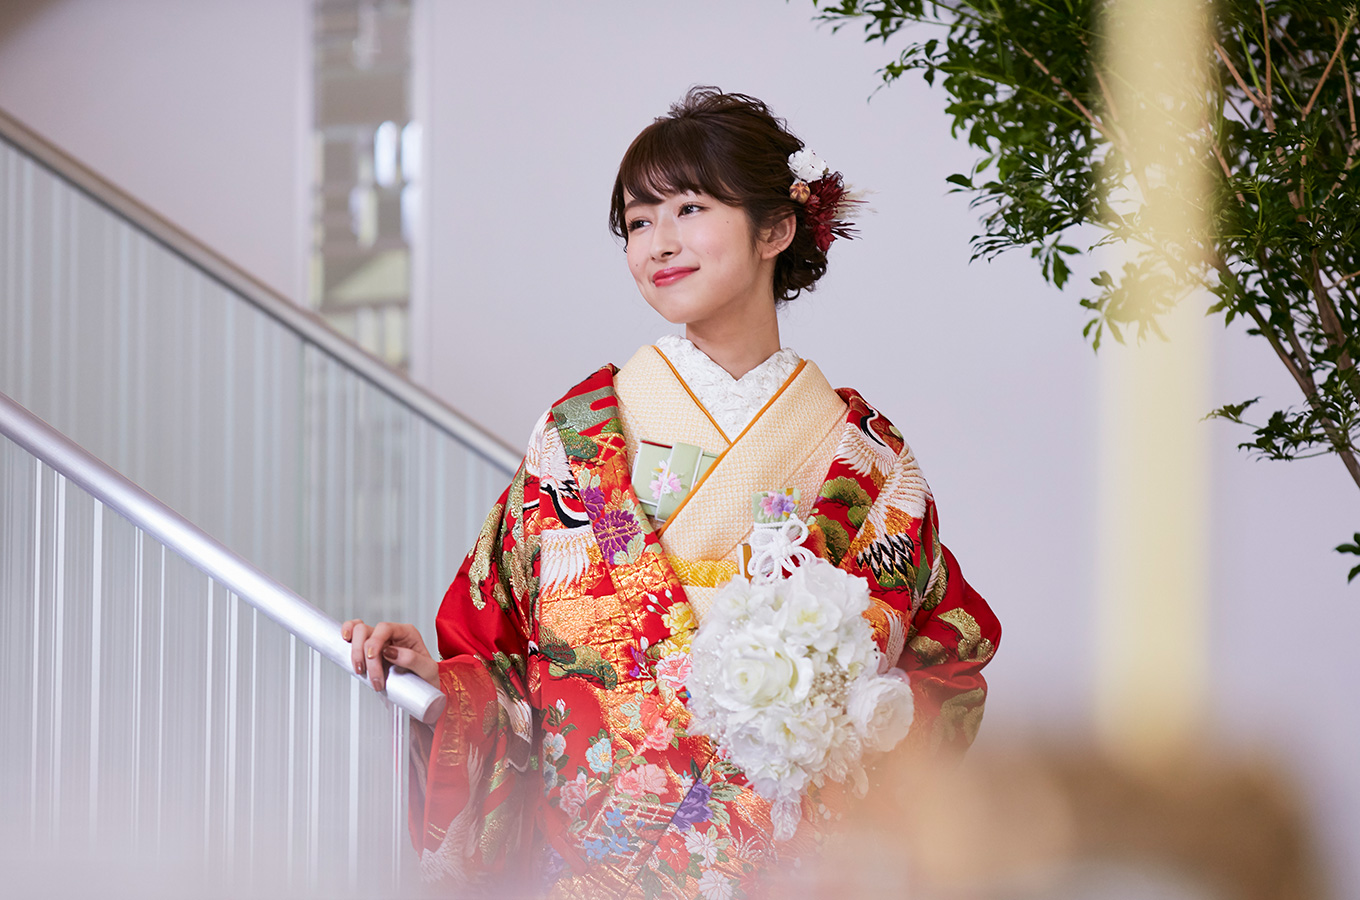 公式 横浜の結婚式場 モンテファーレ 和婚styleで上質なおもてなし 22万で衣裳着放題特典付